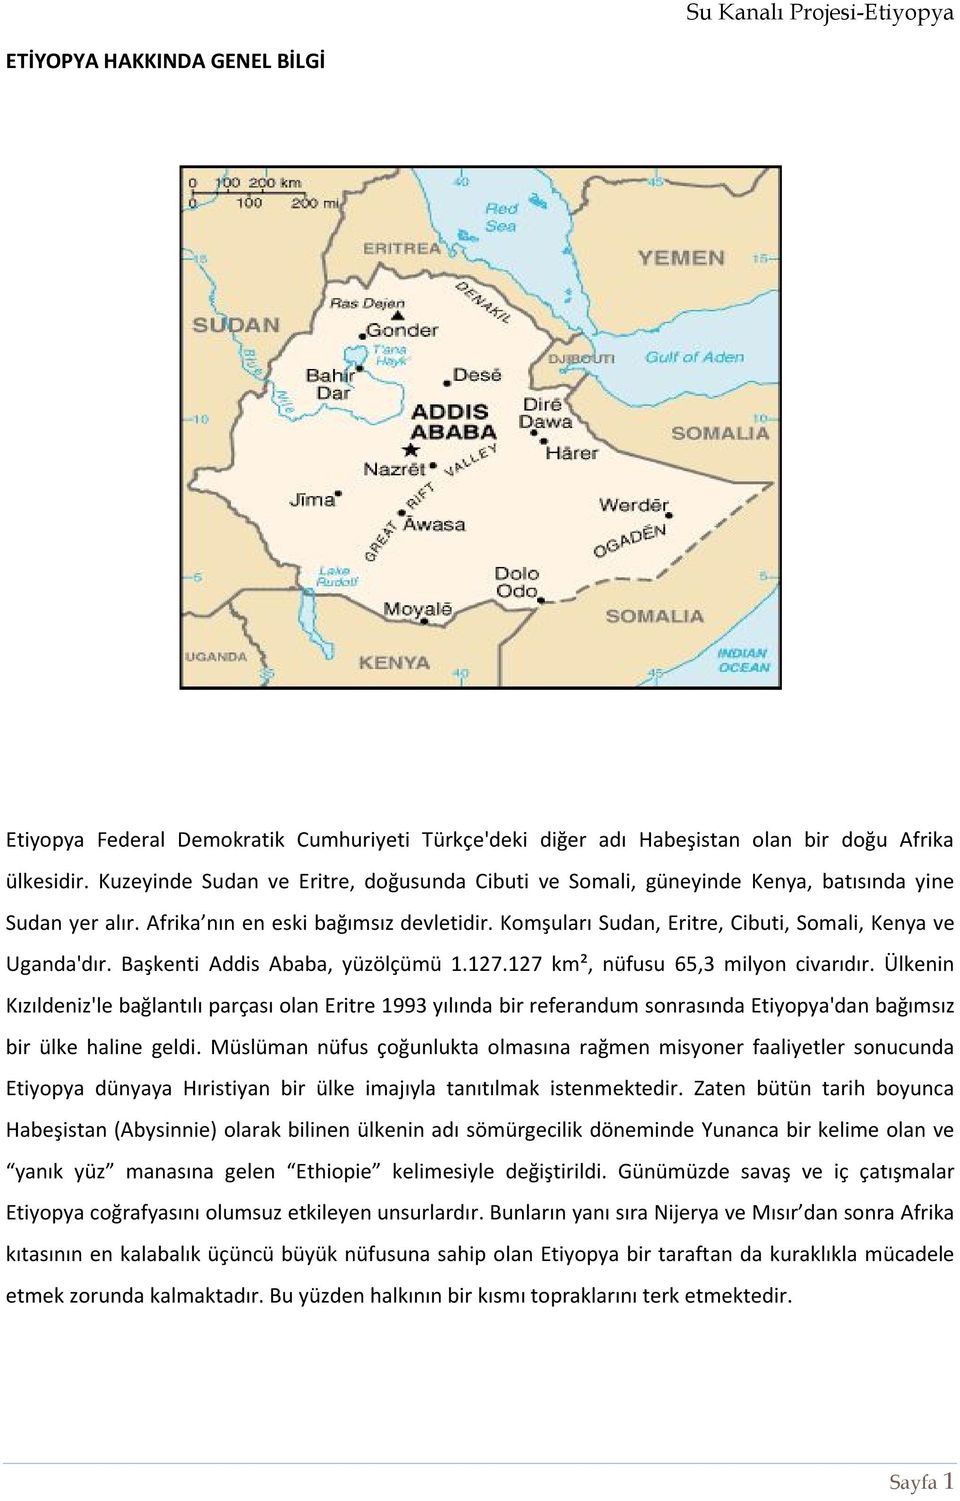 Komşuları Sudan, Eritre, Cibuti, Somali, Kenya ve Uganda'dır. Başkenti Addis Ababa, yüzölçümü 1.127.127 km², nüfusu 65,3 milyon civarıdır.